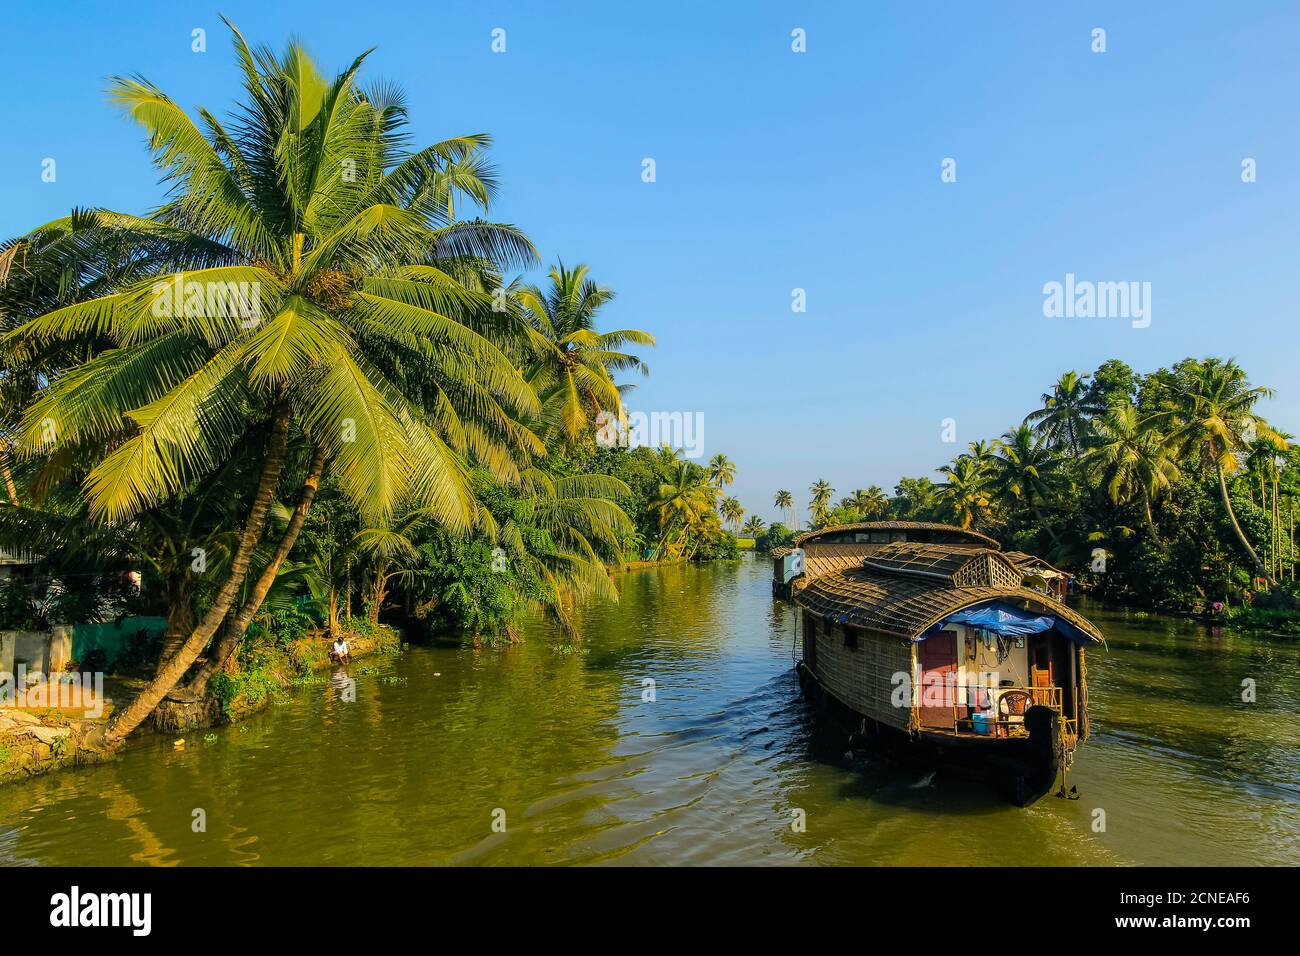 Kerala houseboat crociera le acque interne orlate da palme in una tipica crociera turistica, Alappuzha (Alleppey), Kerala, India, Asia Foto Stock